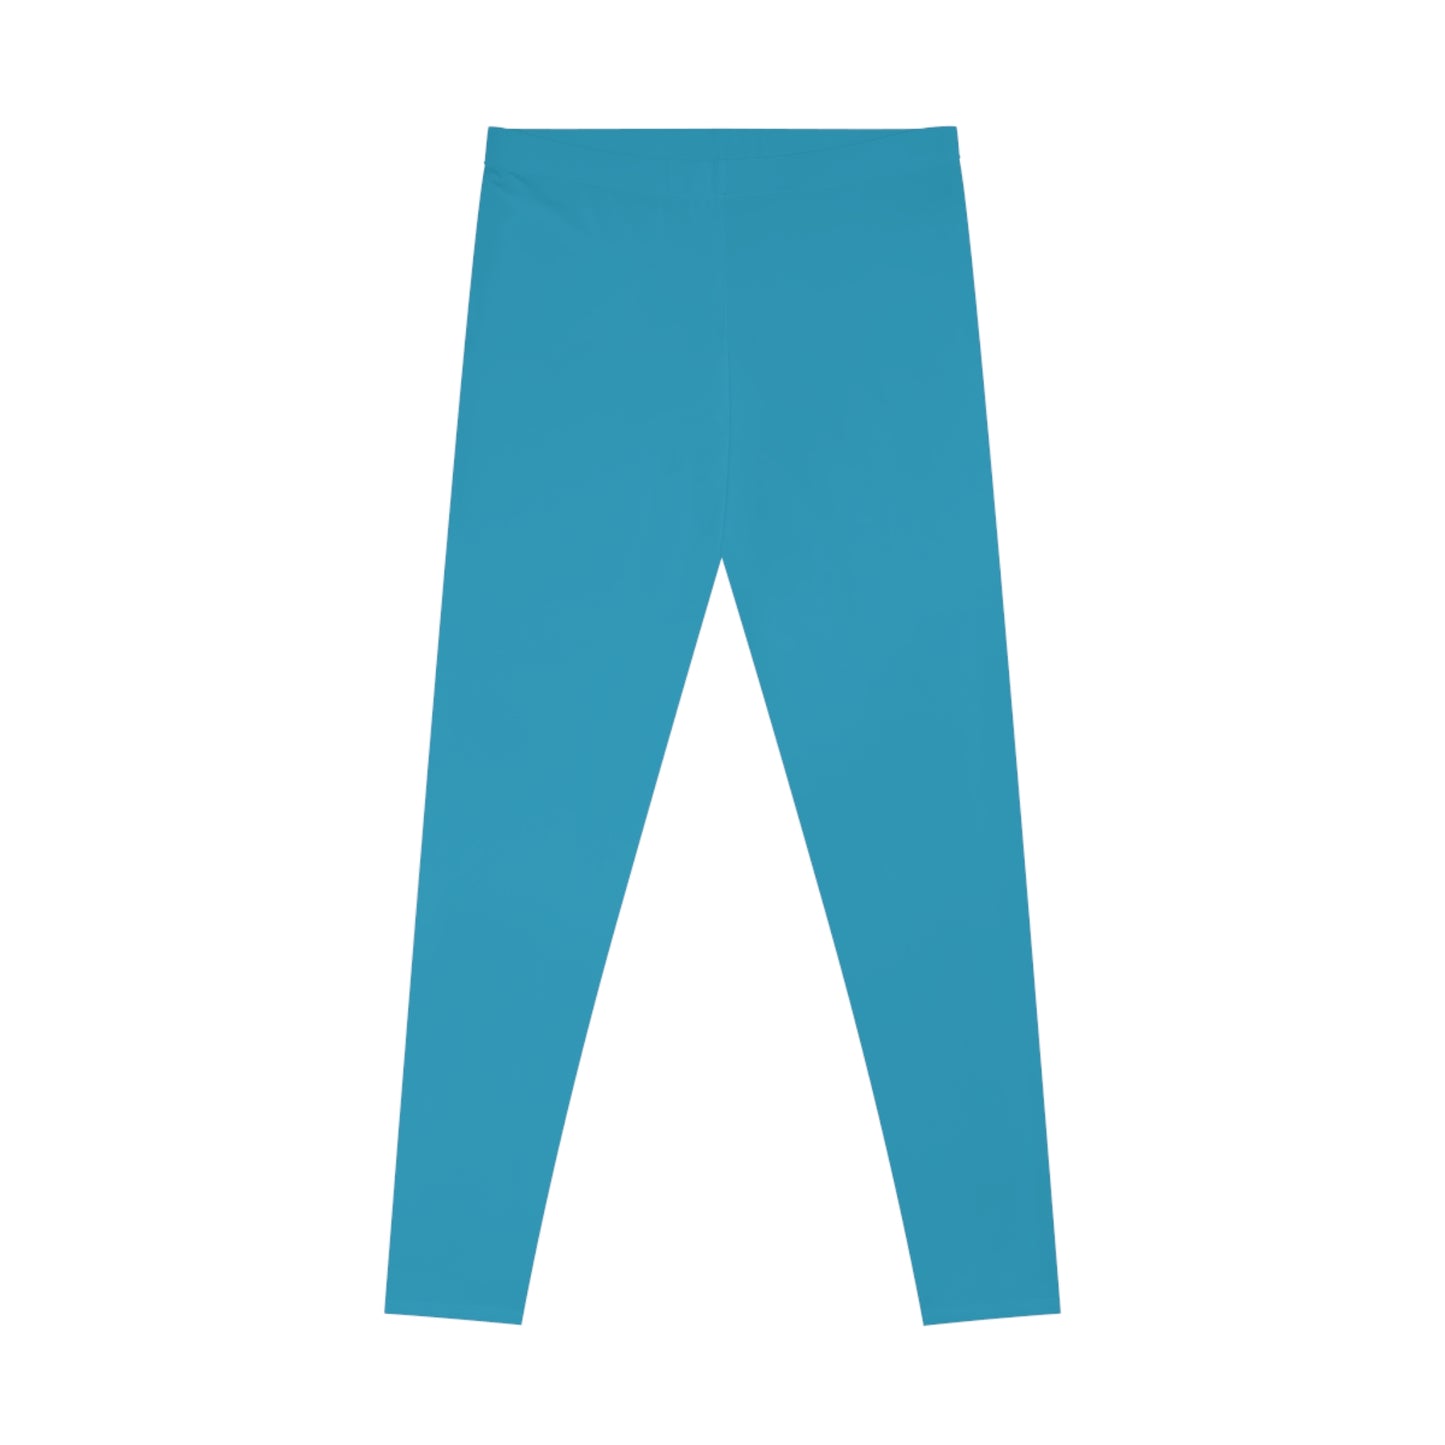 AlphaChic Leggings - Light Blue (Back Logo)